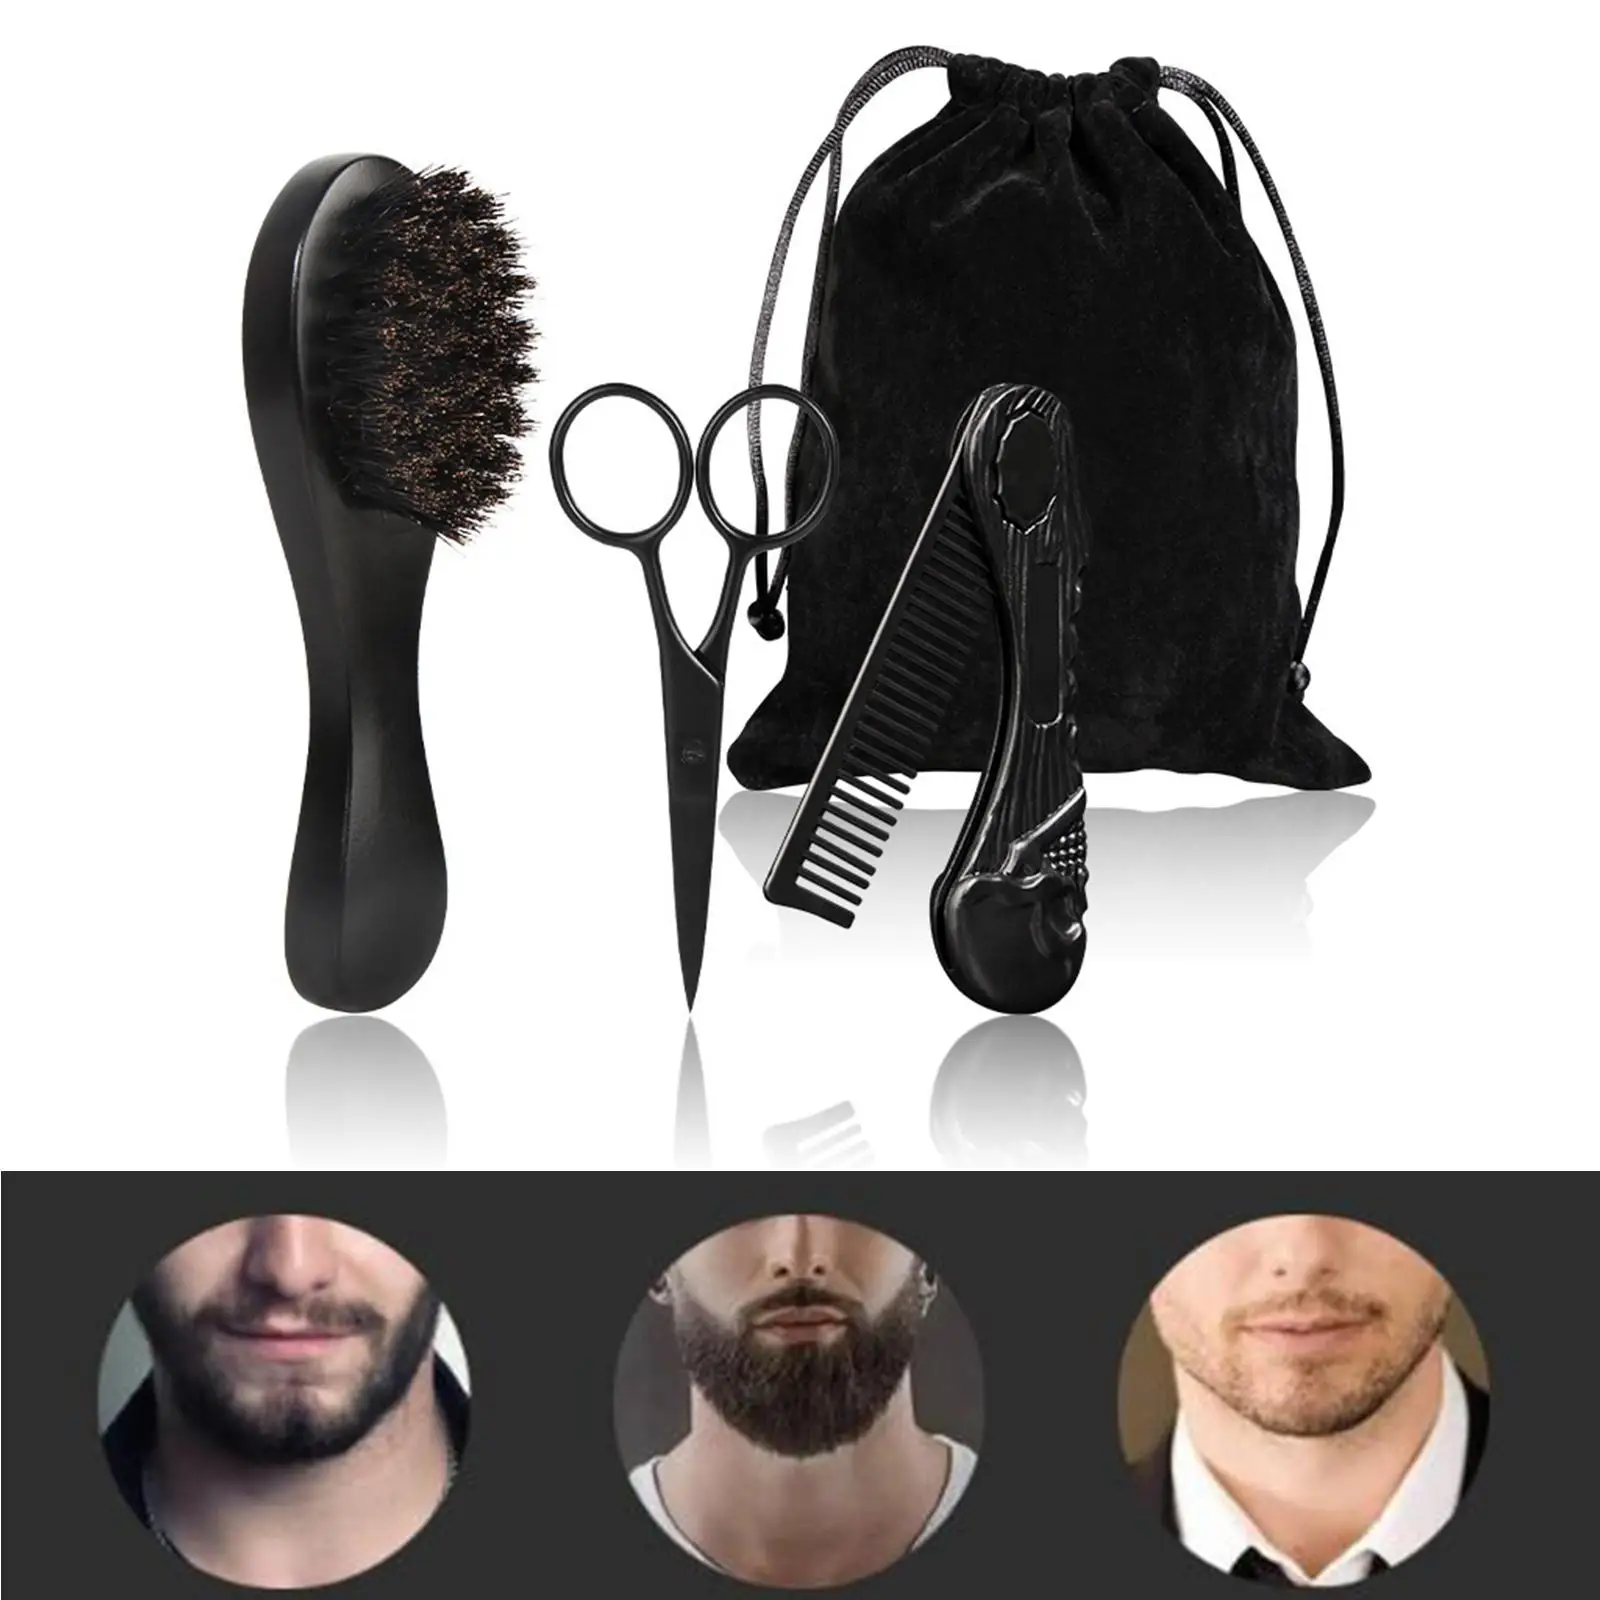 3x Professional Beard Care Kit for Men Gift Wooden Folding Comb Brush Mustache Scissors for Travel Men`s Home Beard Grooming Kit